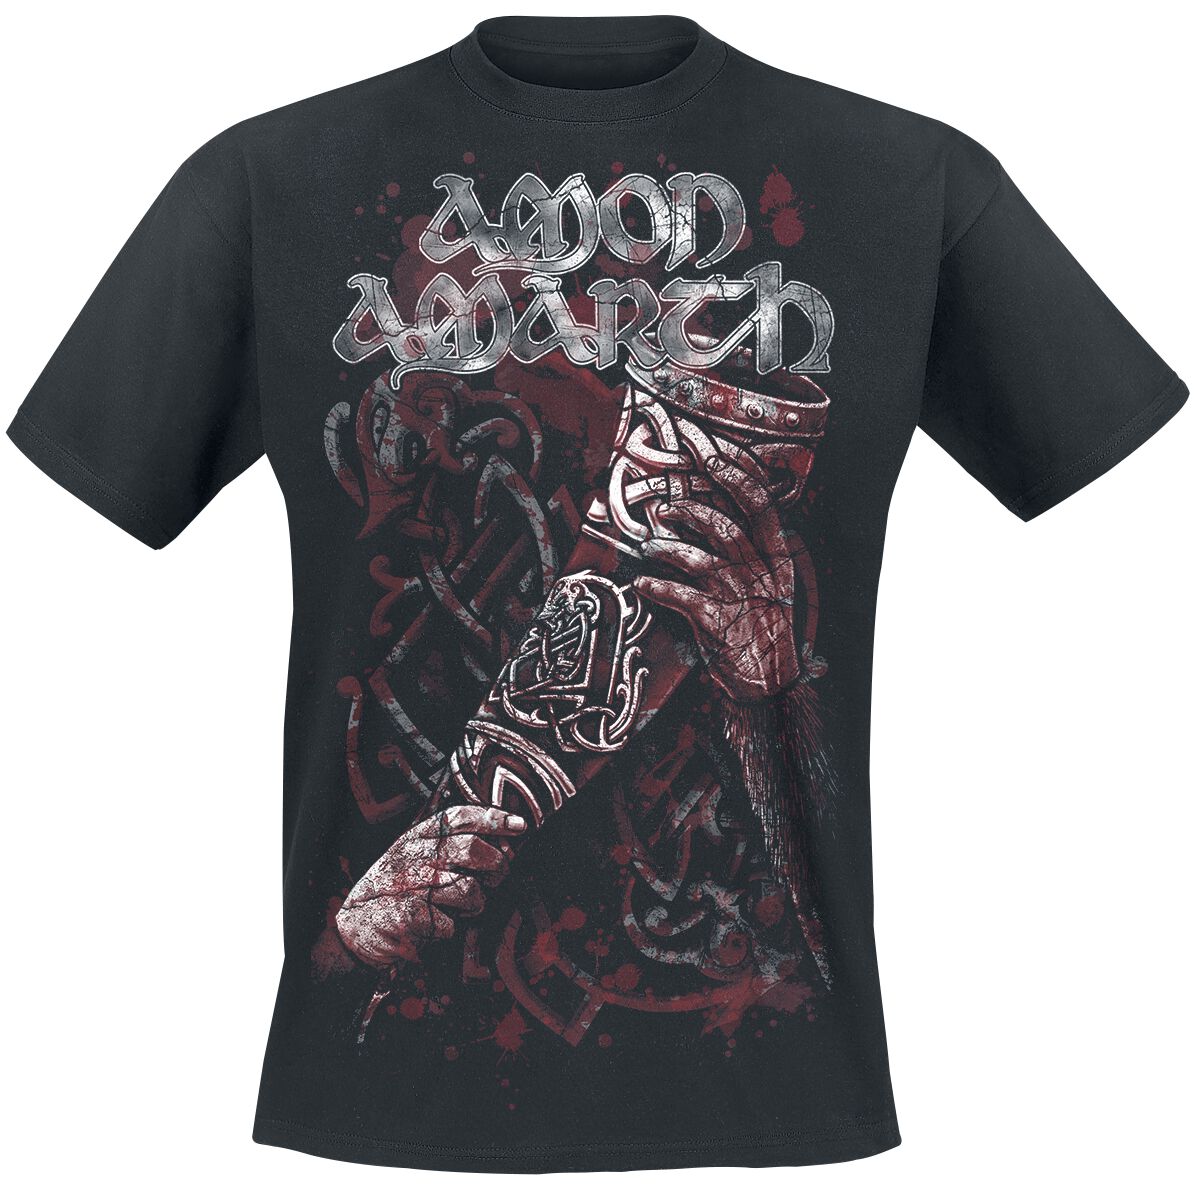 Amon Amarth T-Shirt - Raise Your Horns - S bis 5XL - für Männer - Größe 3XL - schwarz  - Lizenziertes Merchandise!